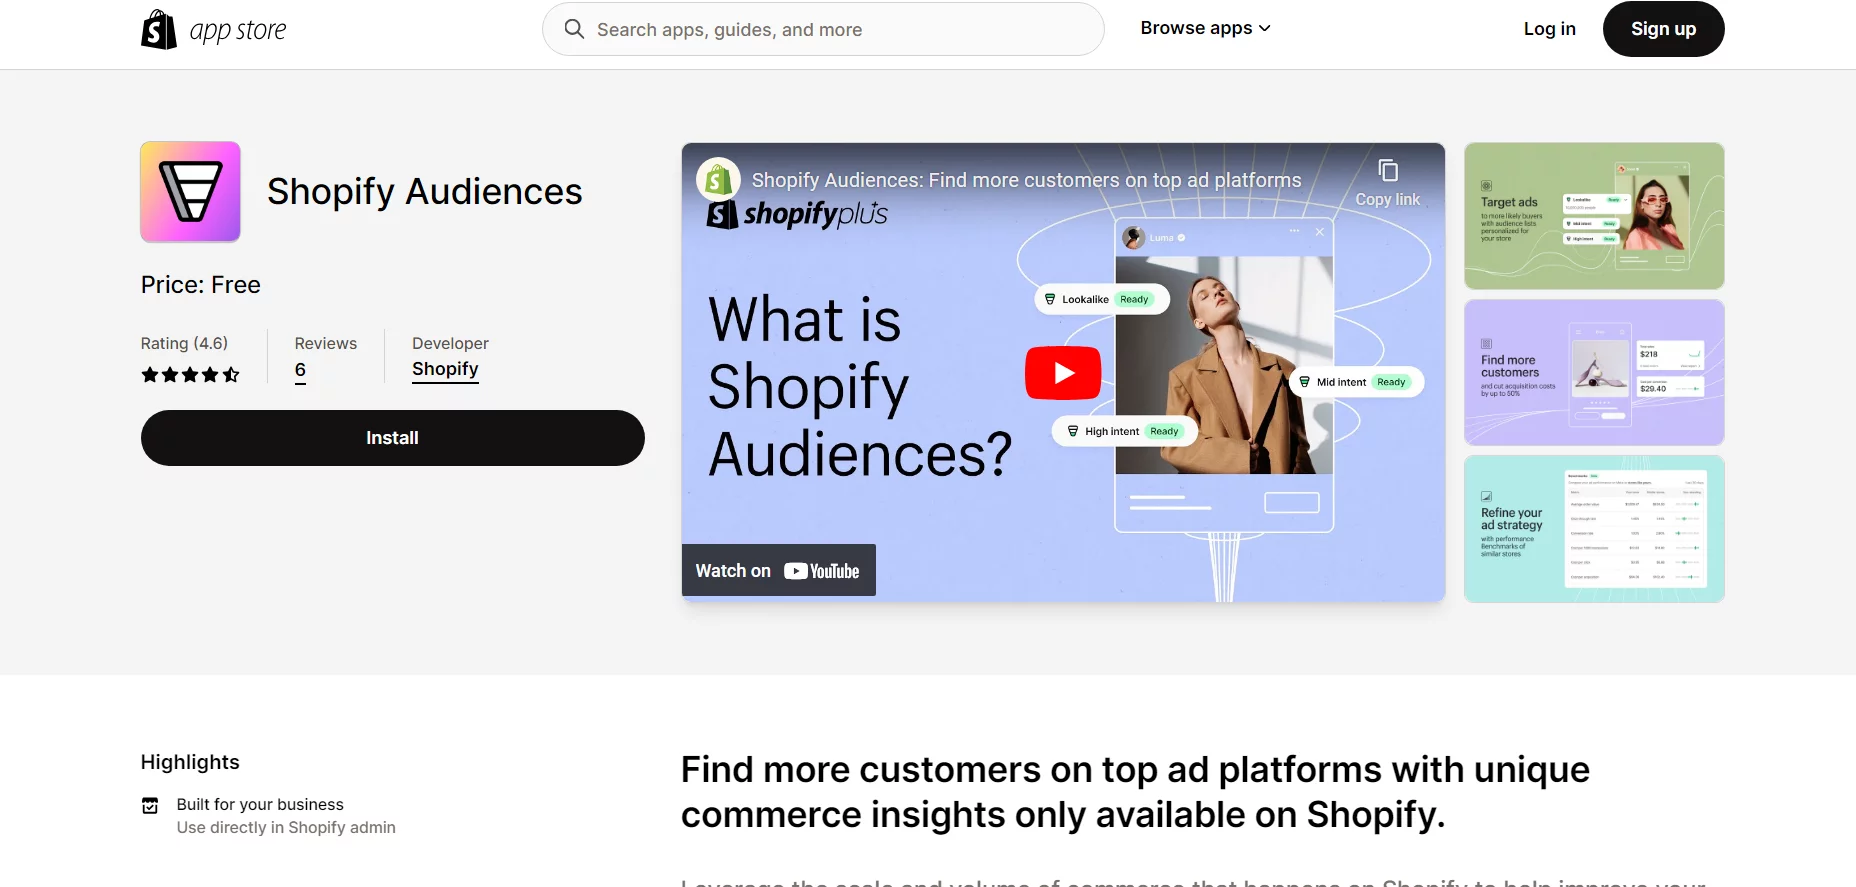 Shopify Audiences